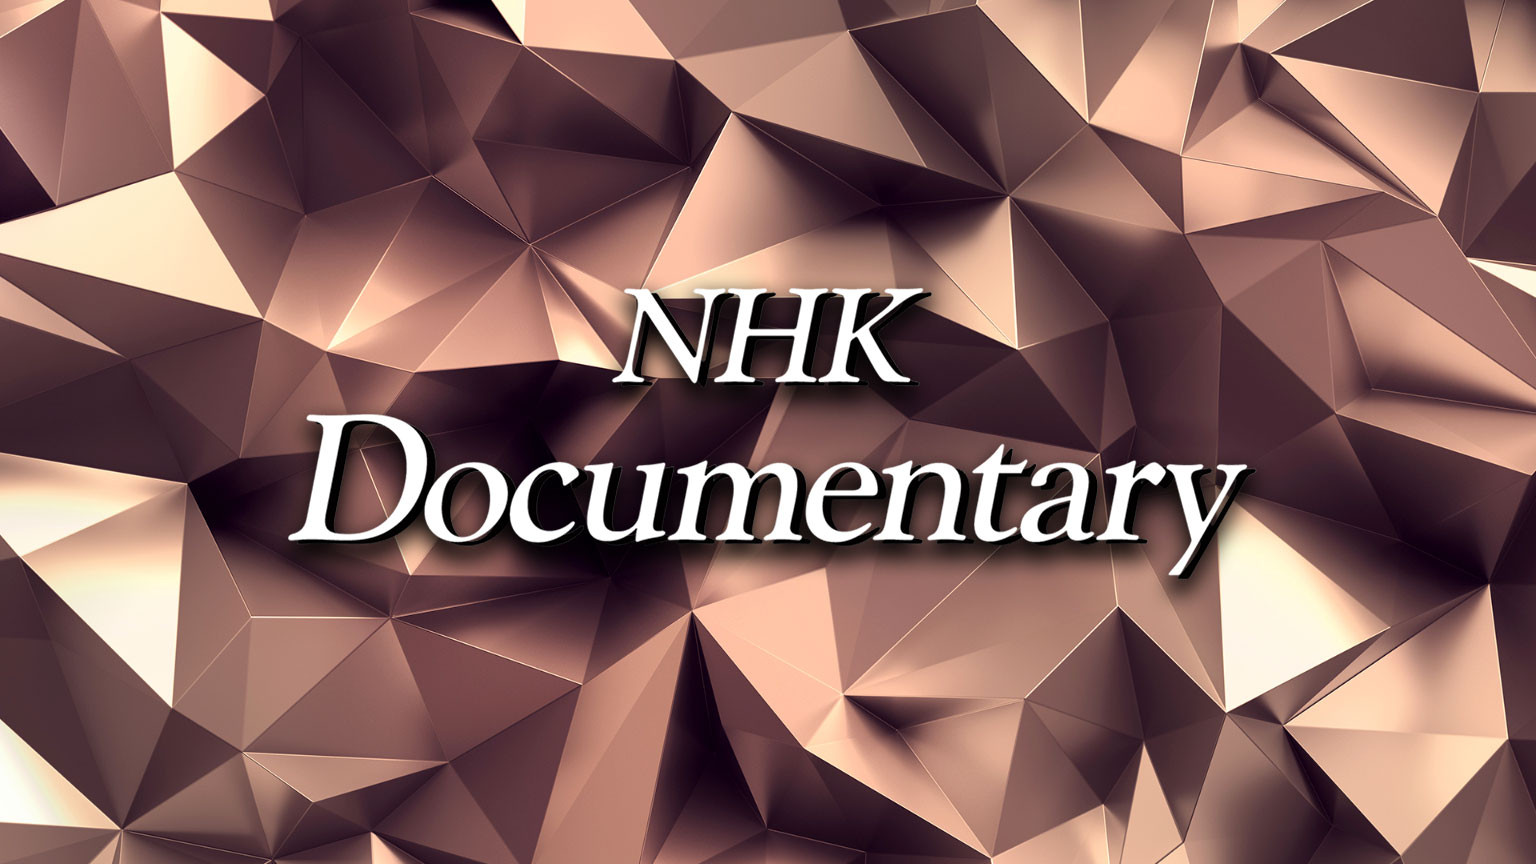 NHK မှတ်တမ်းရုပ်မြင်သံကြားဇာတ်လမ်း
NHK Documentary